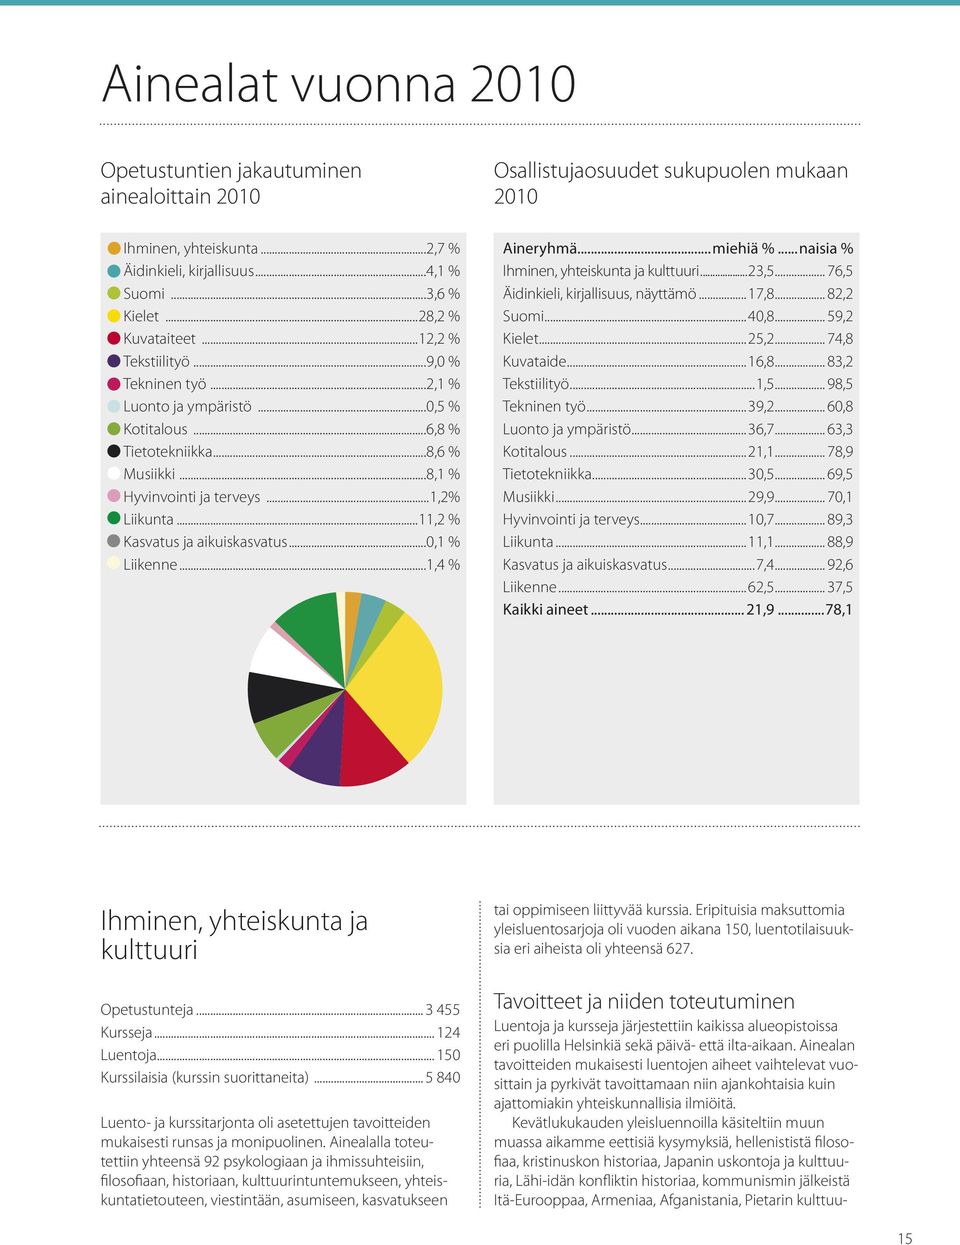 ..11,2 % Kasvatus ja aikuiskasvatus...0,1 % Liikenne...1,4 % Aineryhmä...miehiä %...naisia % Ihminen, yhteiskunta ja kulttuuri...23,5... 76,5 Äidinkieli, kirjallisuus, näyttämö...17,8... 82,2 Suomi.